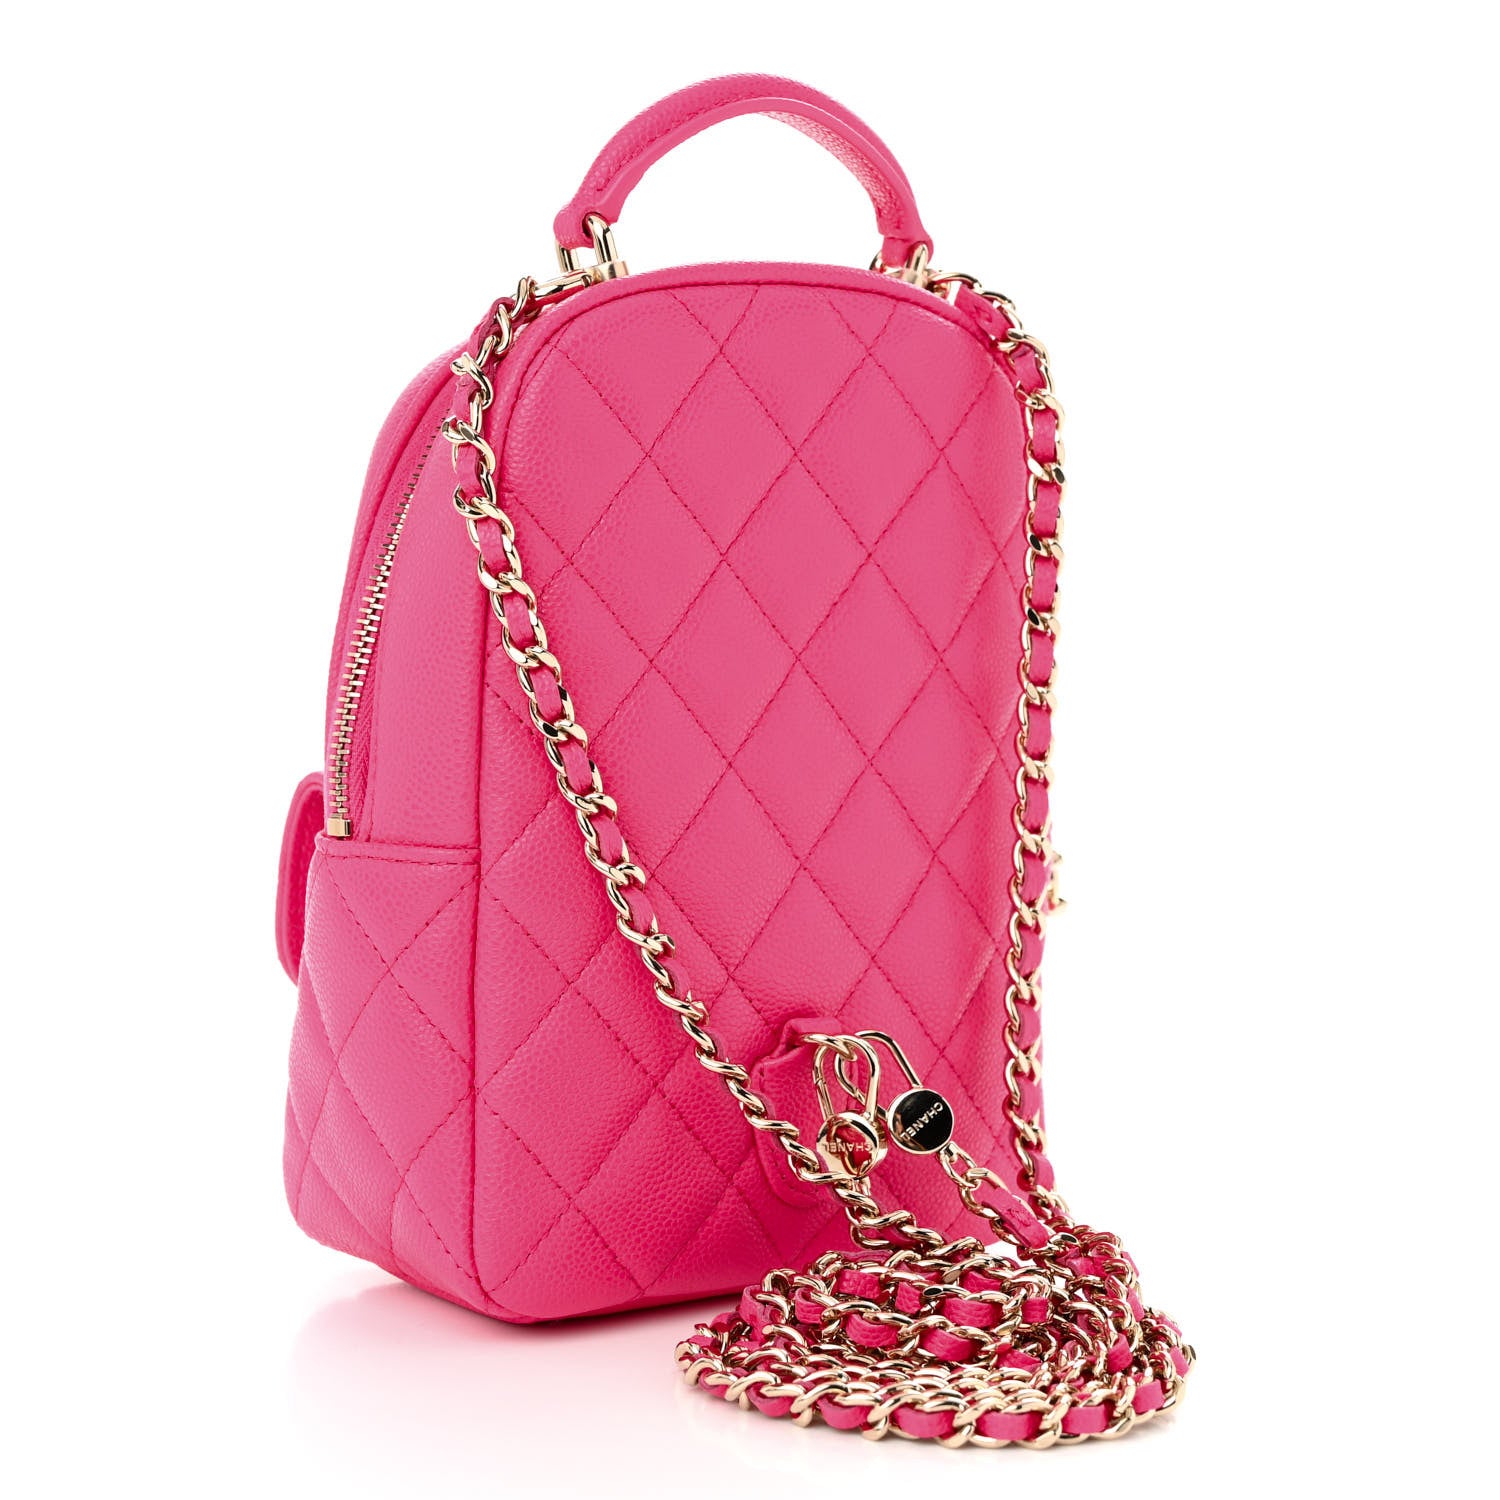 Chanel Mini Backpack Fuchsia